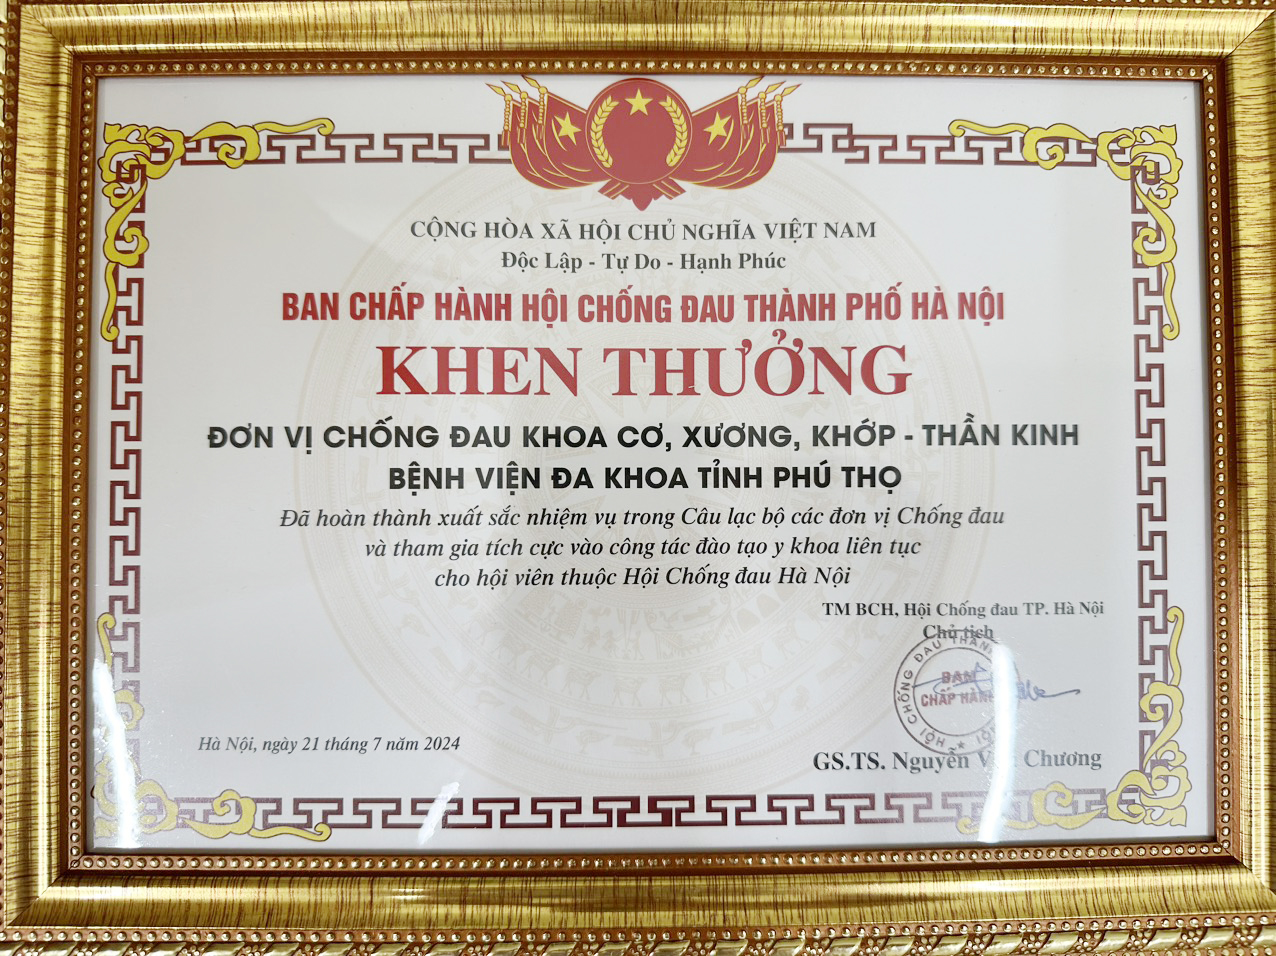 Đơn vị Chống đau - Bệnh viện đa khoa tỉnh Phú Thọ tỉnh Phú Thọ vinh dự nhận bằng khen từ Hội Chống đau Hà Nội